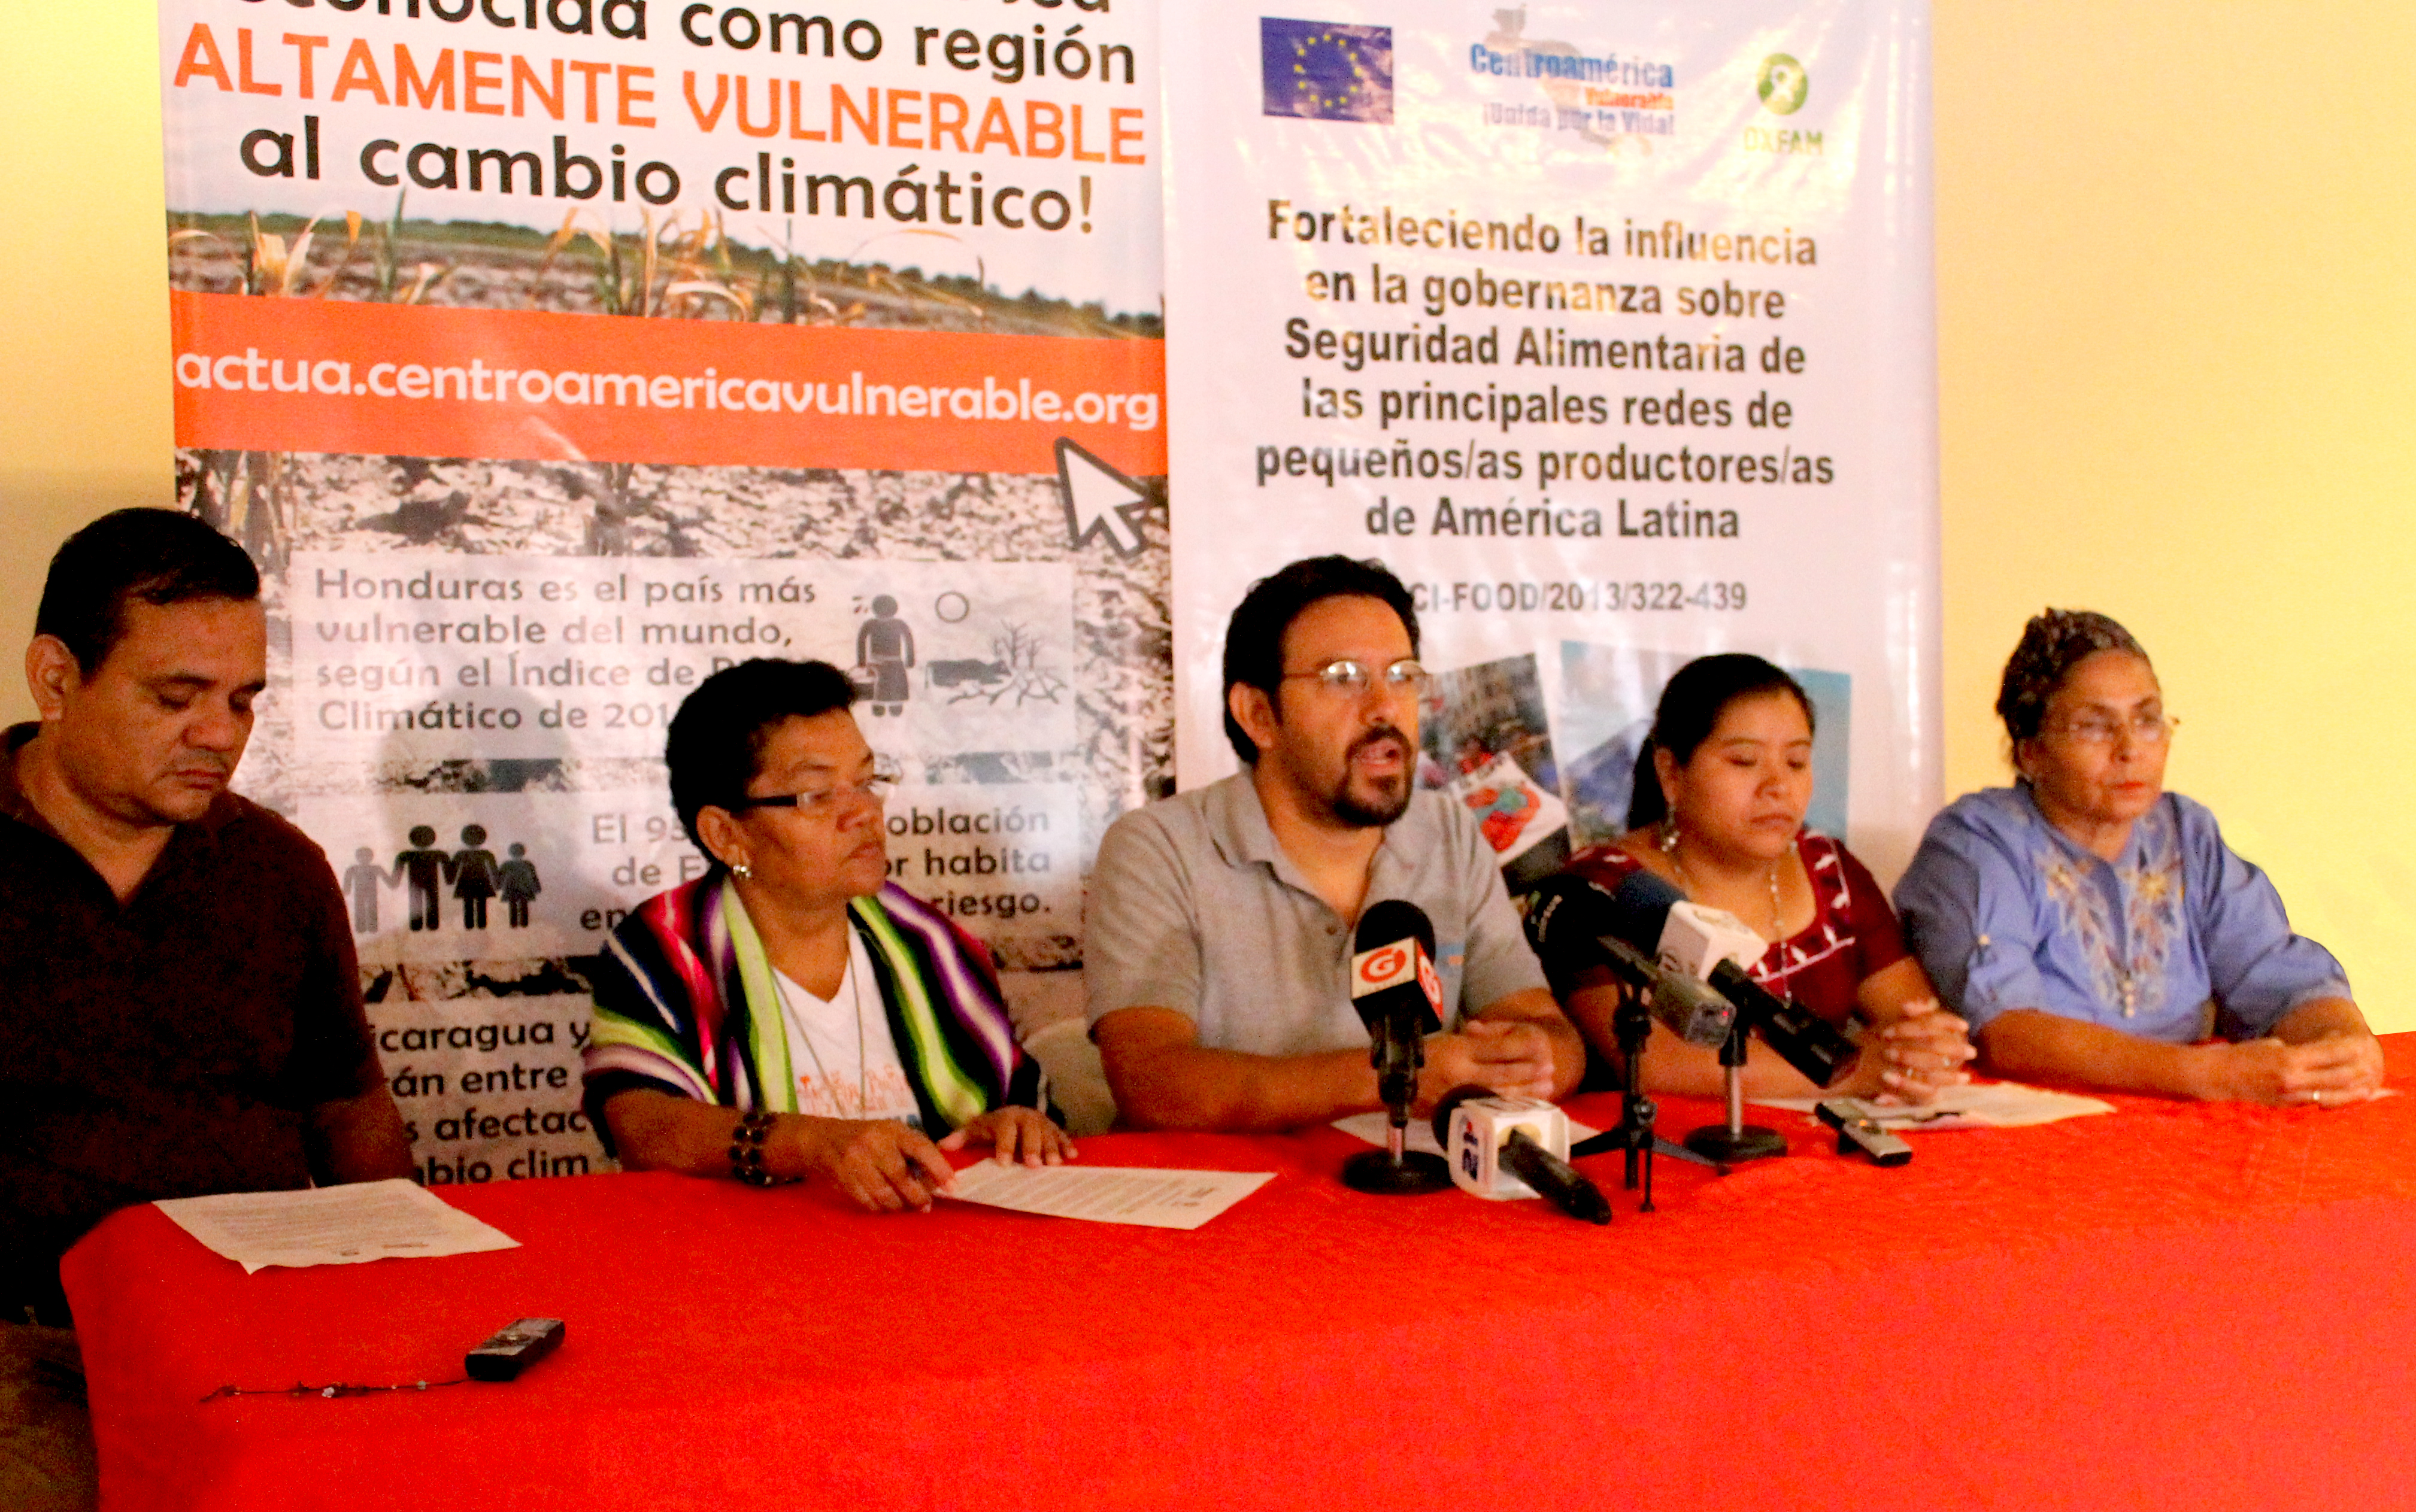 Centroamérica debe ser reconocida como región ALTAMENTE VULNERABLE al cambio climático: Foro Centroamérica Vulnerable